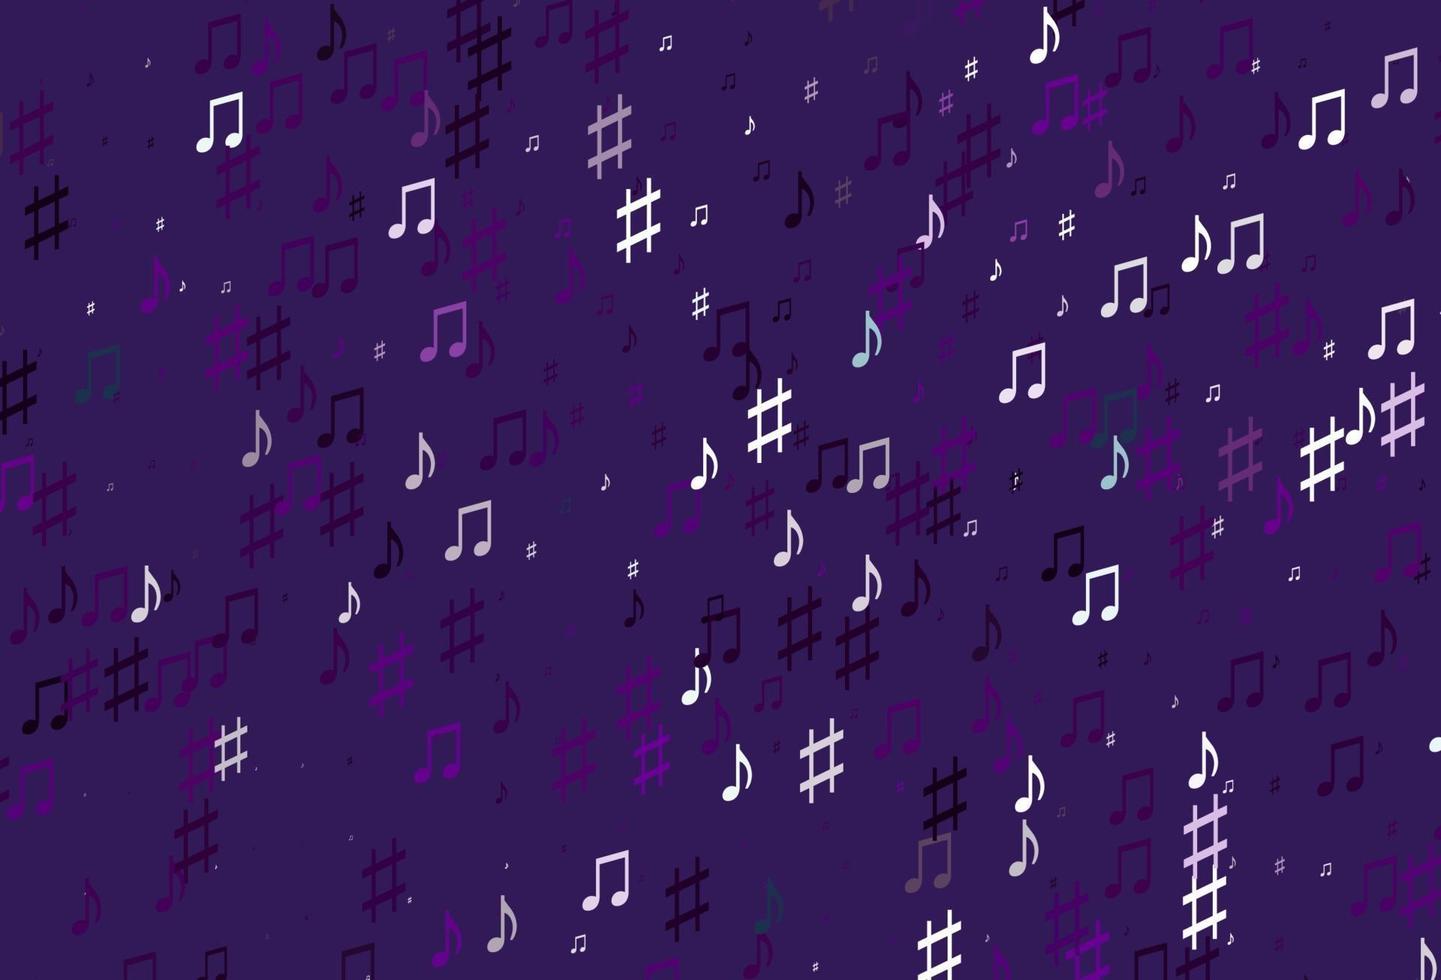 patrón de vector de color púrpura claro con elementos de la música.